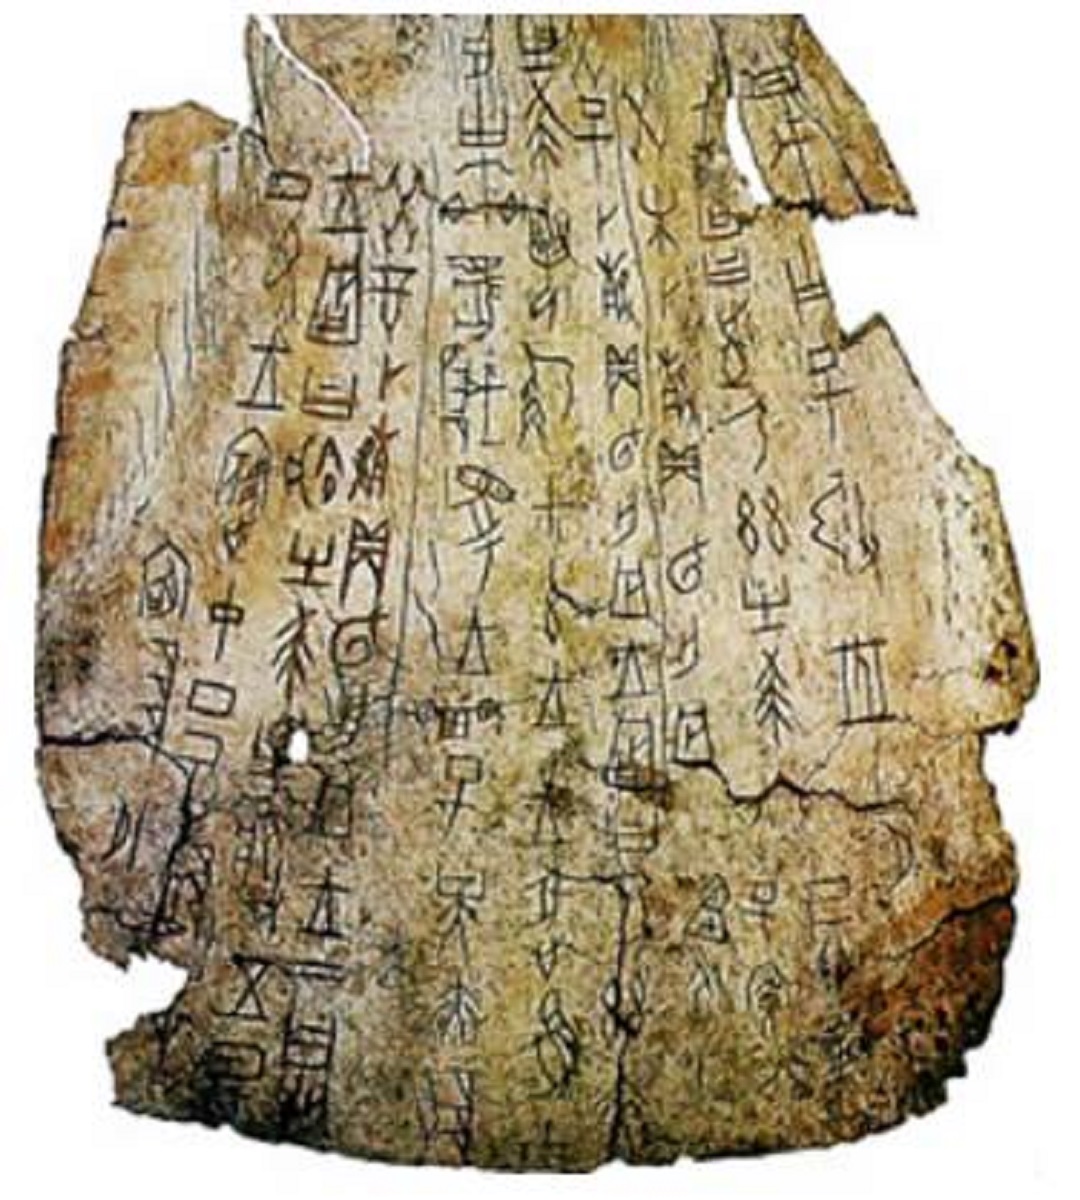 中国历史上有1500年不存在任何文字记载，这段空白期发生了什么？